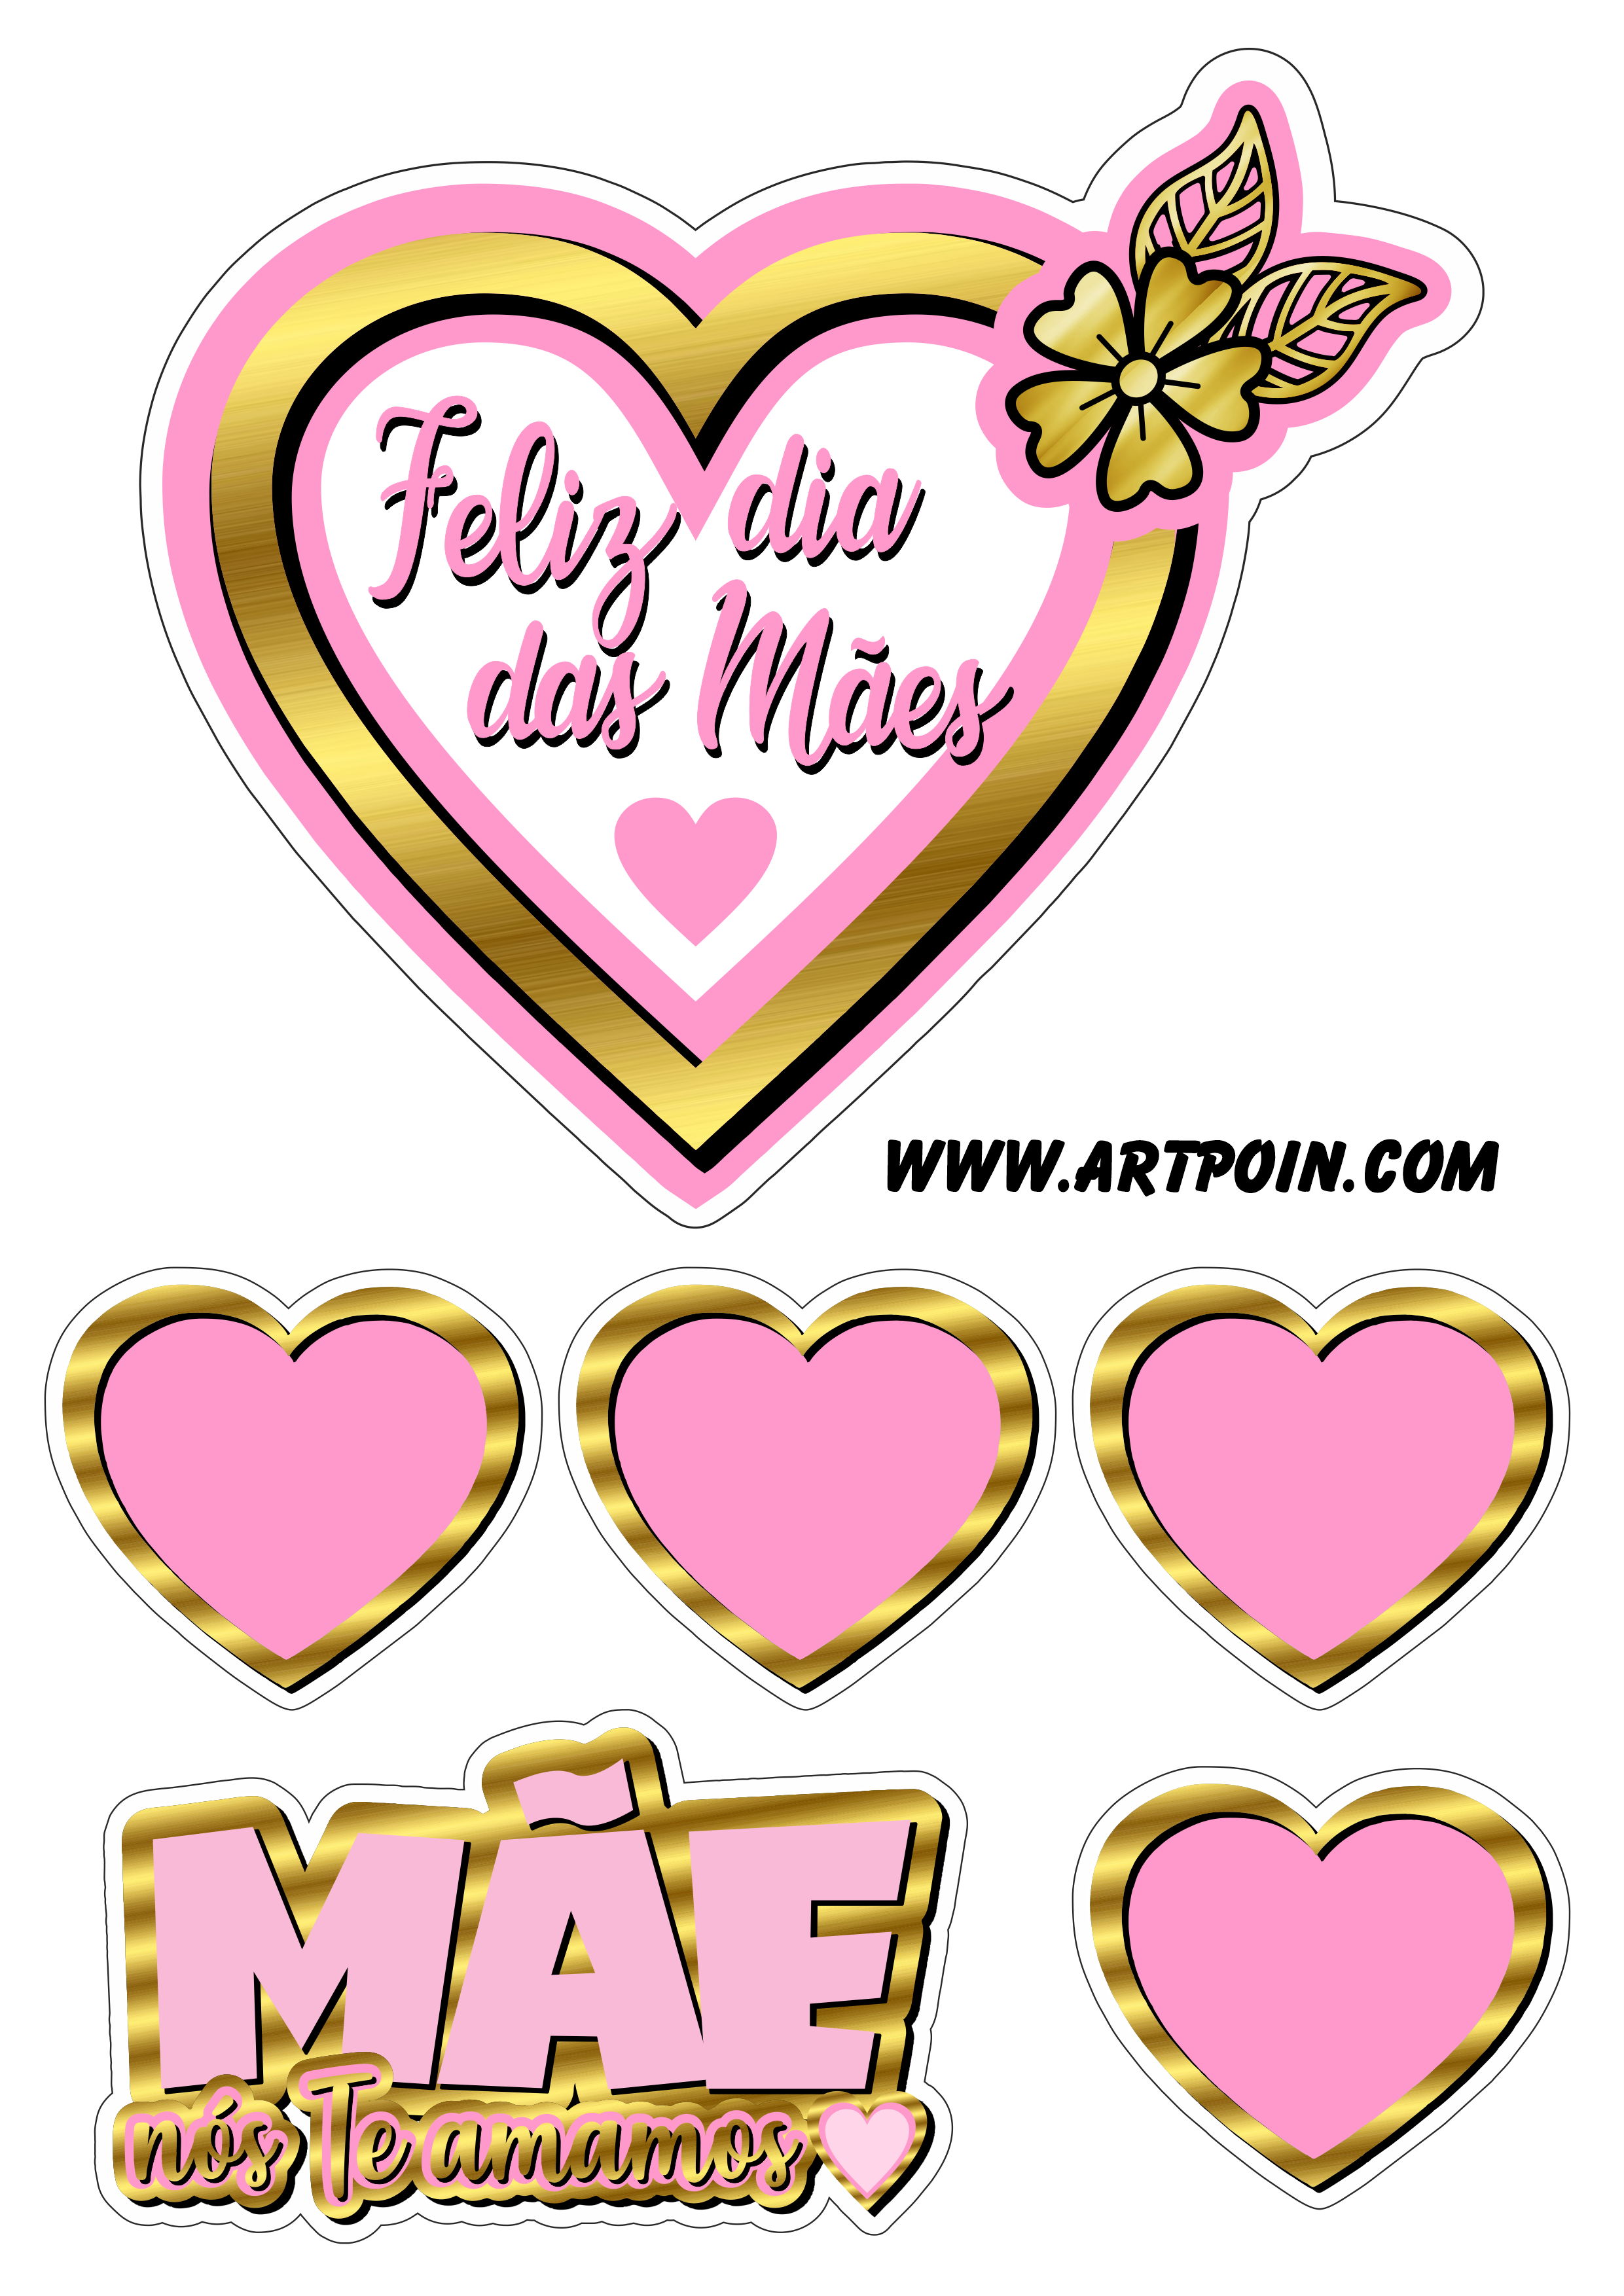 Feliz dia das mães rosa com dourado flores e borboletas topo de bolo artes gráficas png